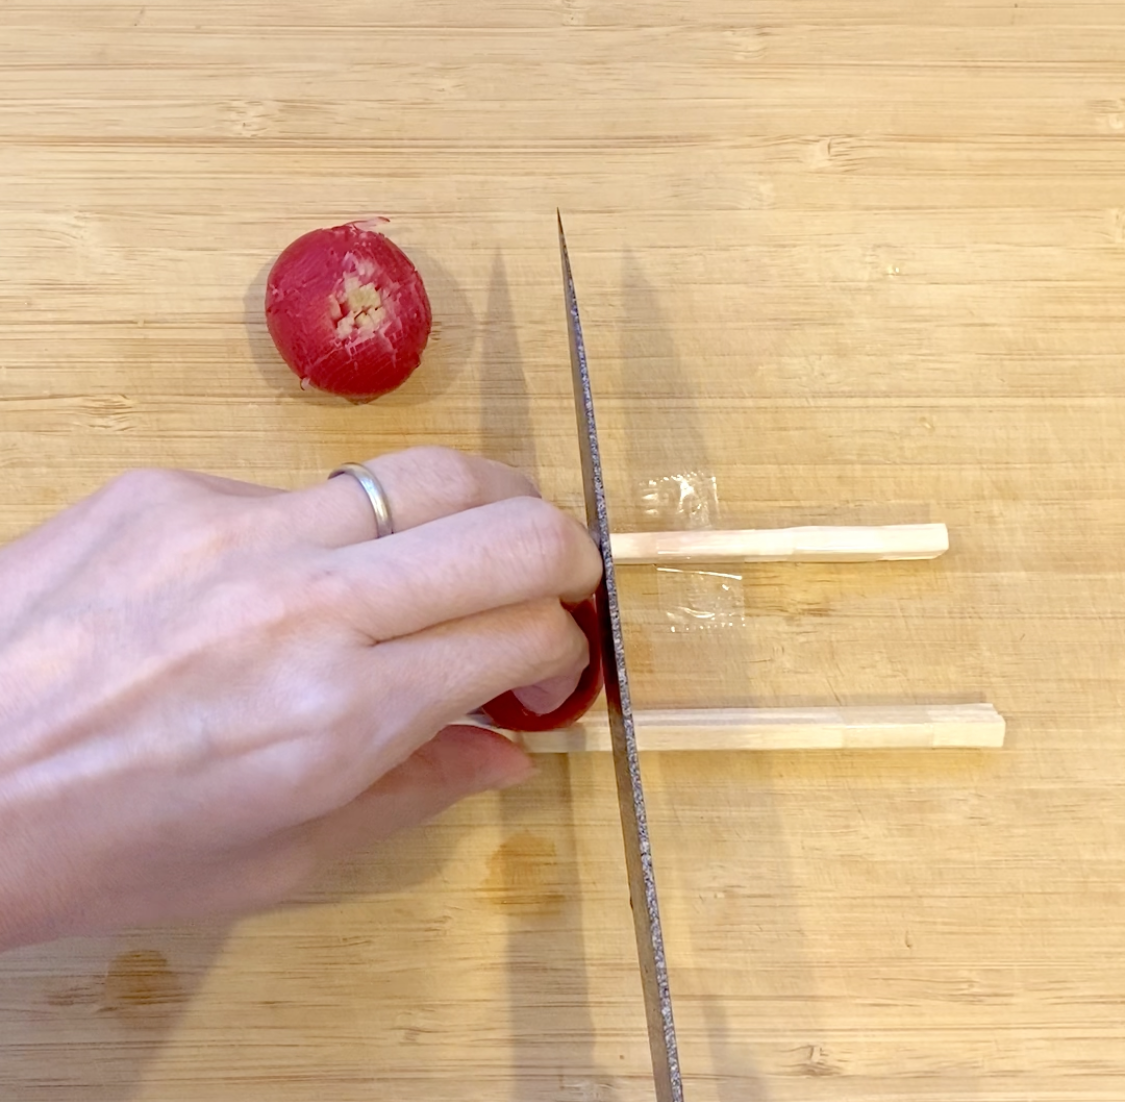 ラディッシュ飾り切り椿の作り方4